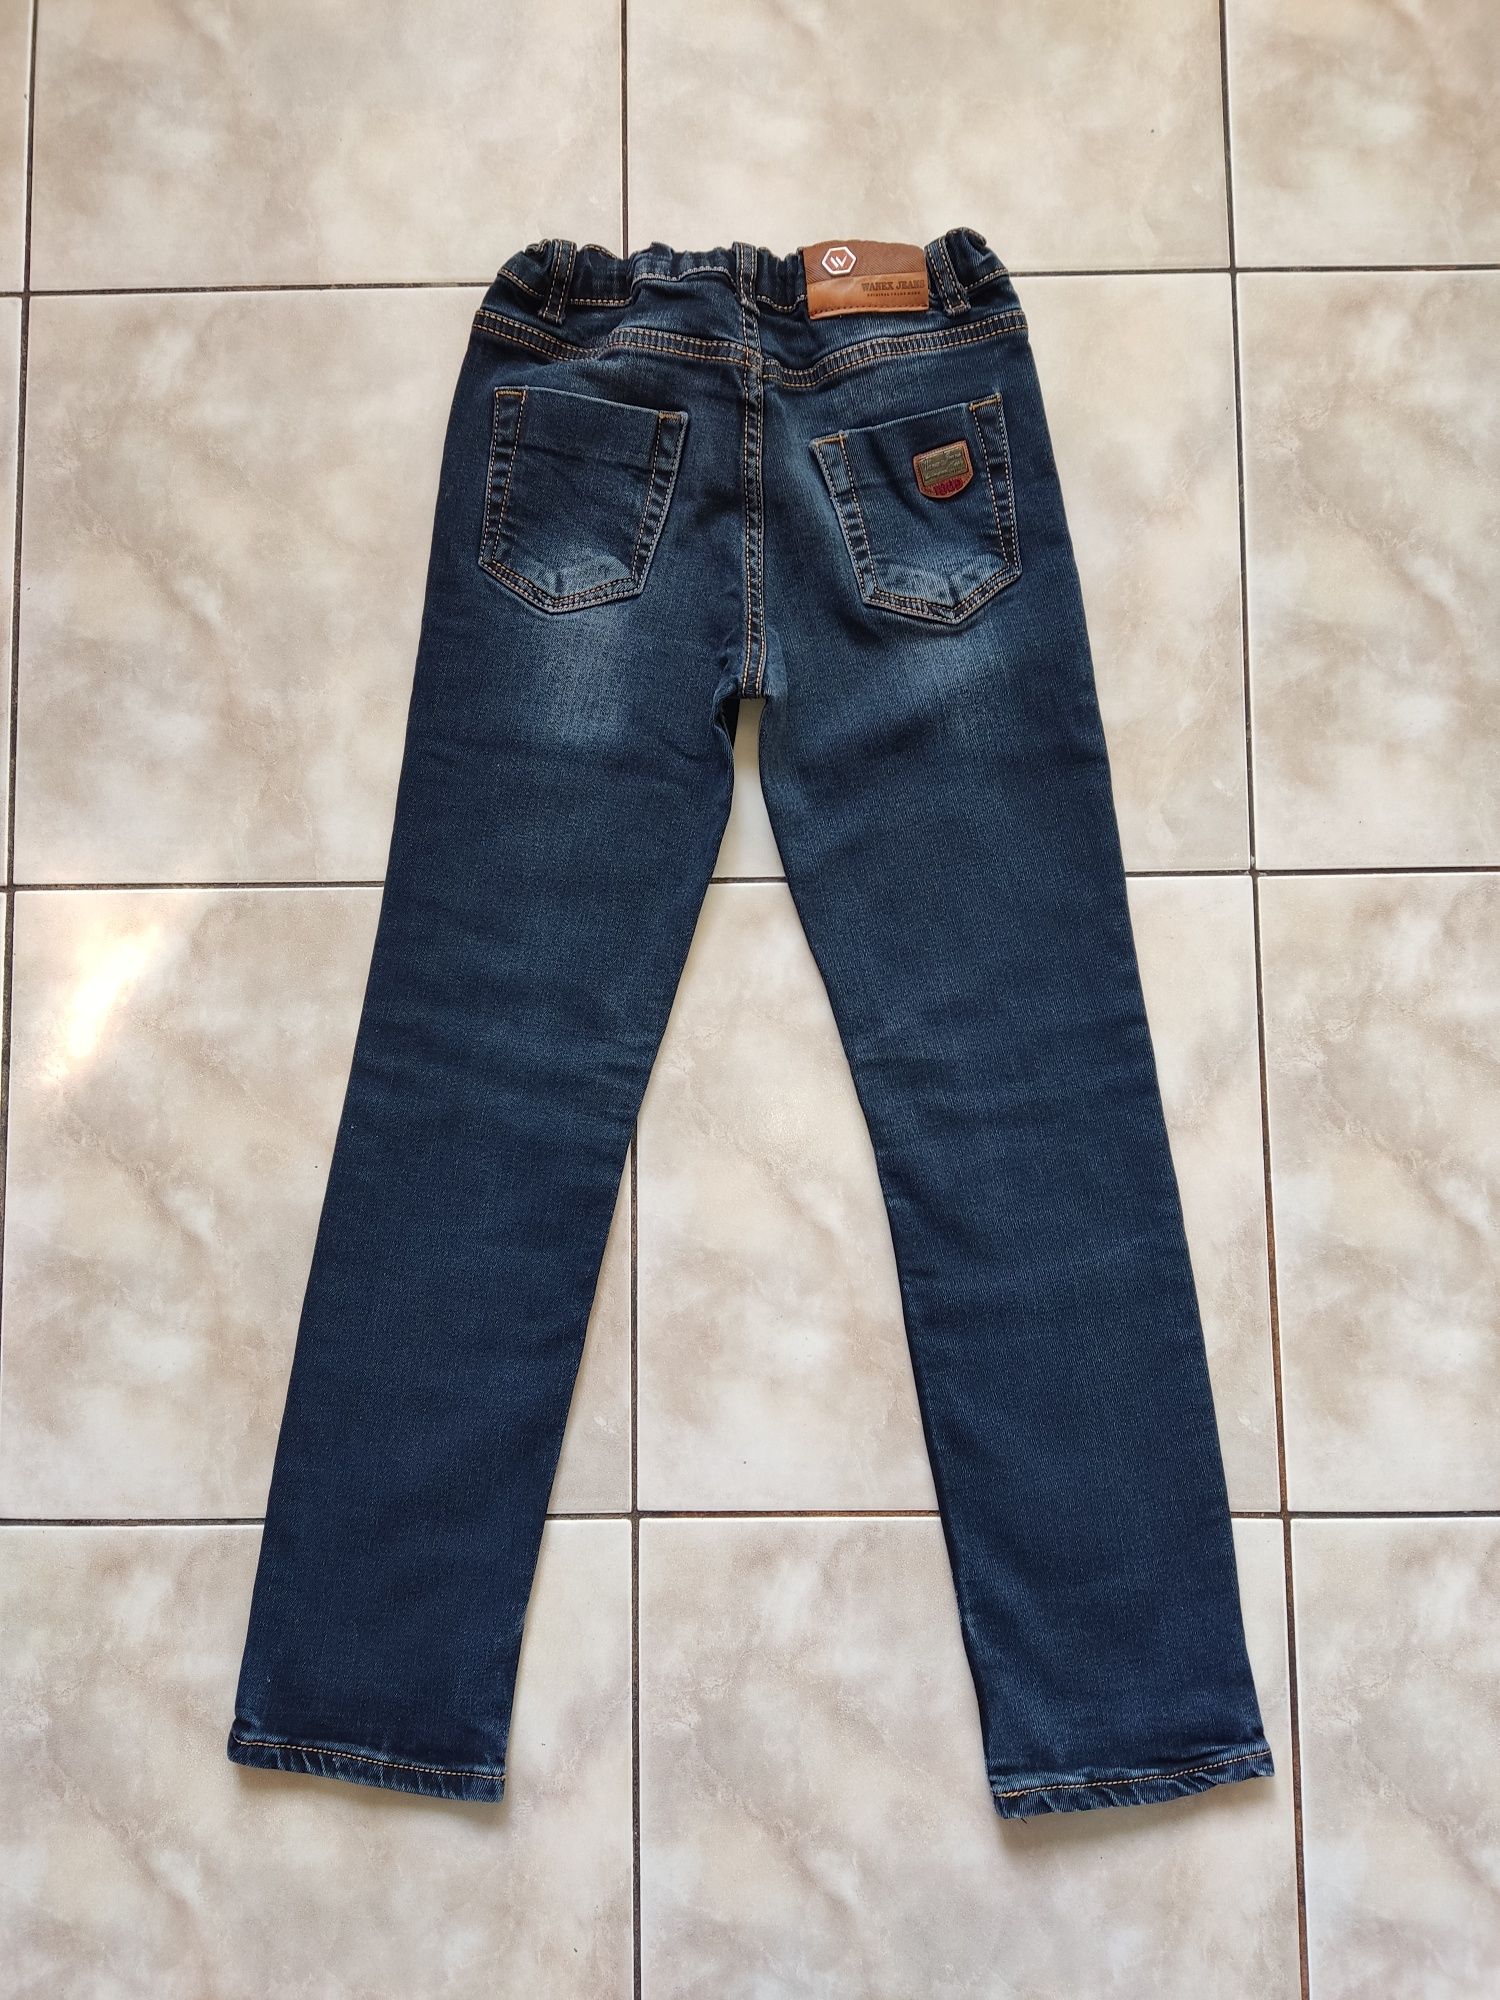 Стильные джинсы на рост 130 см Турция